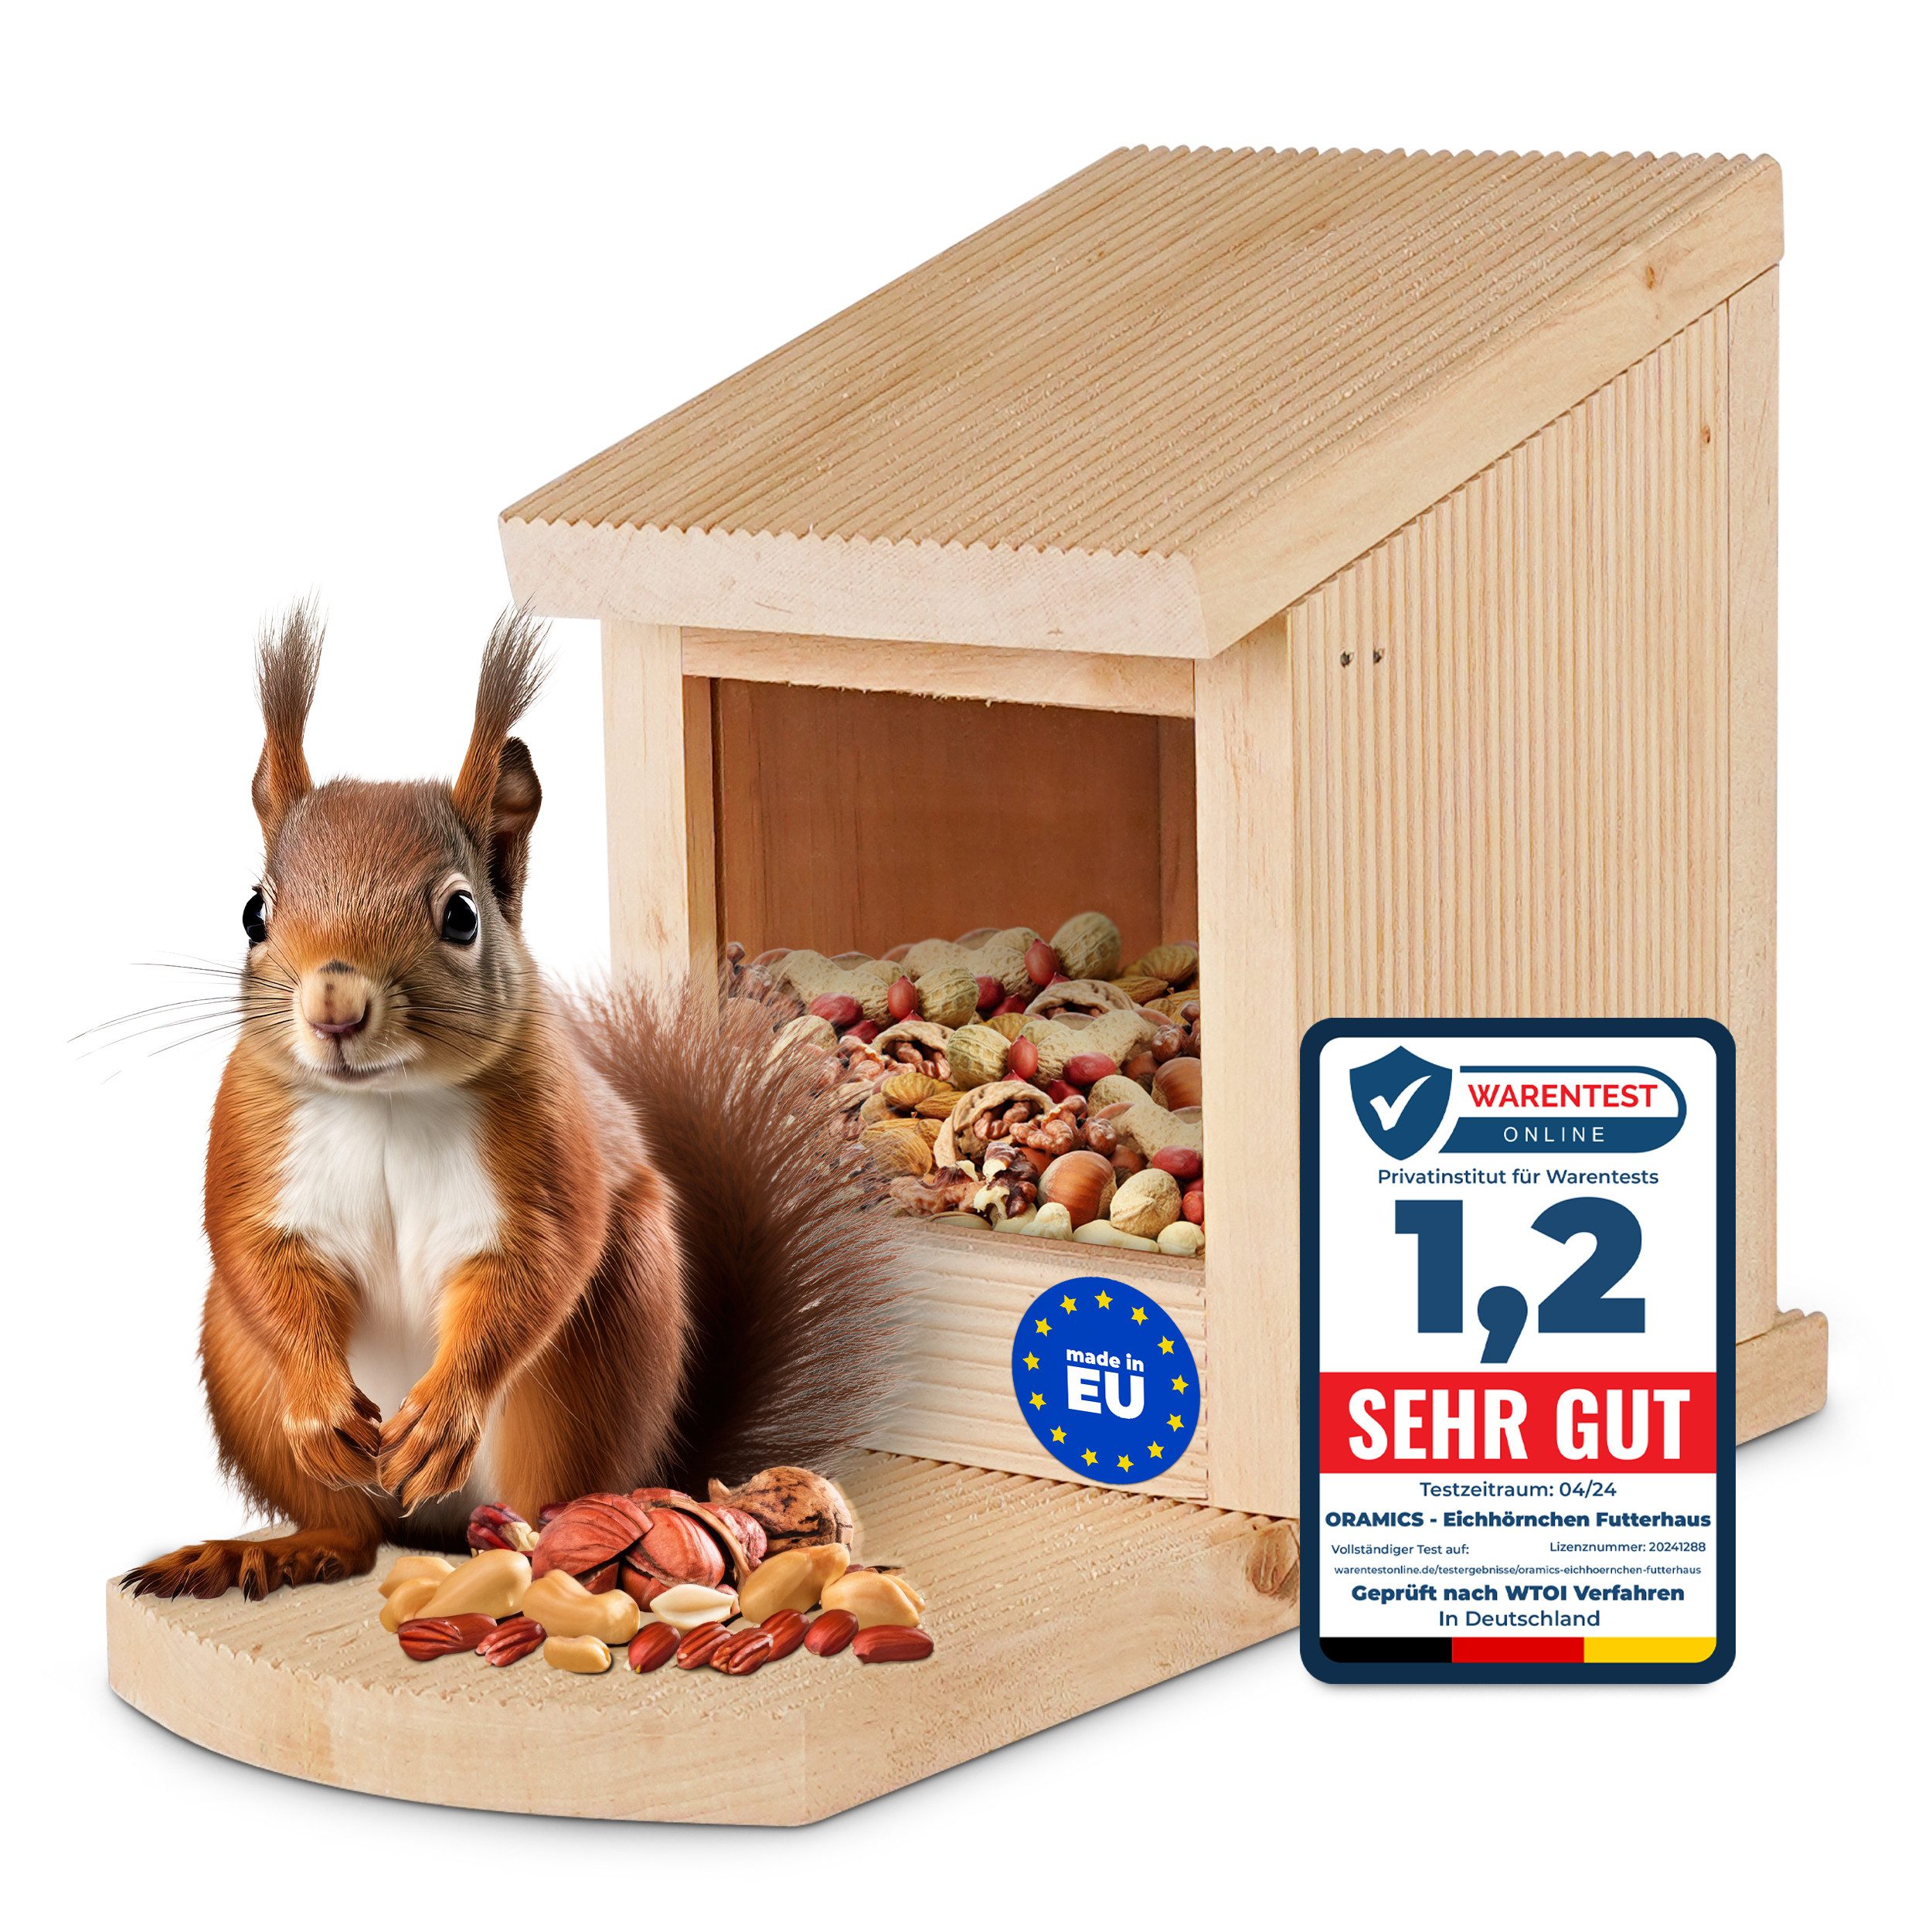 Oramics Eichhörnchenkobel 1x Eichhörnchen Holz Futterhaus Futterstelle Futterbox zum Aufhängen, mit großem Sichtfenster für Optimale Futter-Überwachung